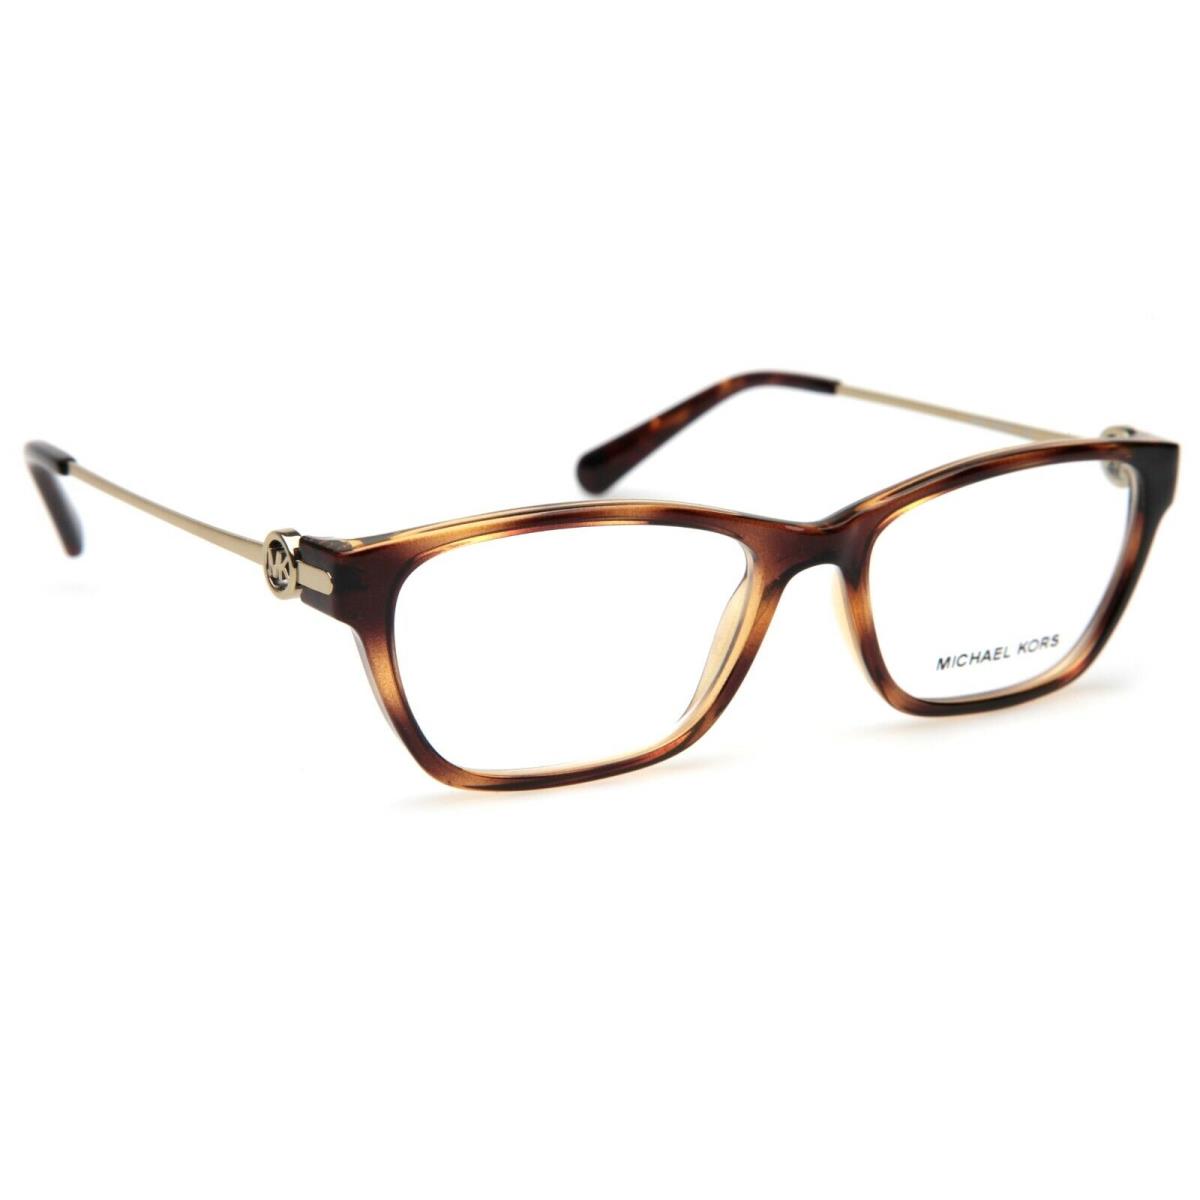 Michael Kors eyeglasses  - Frame: 1